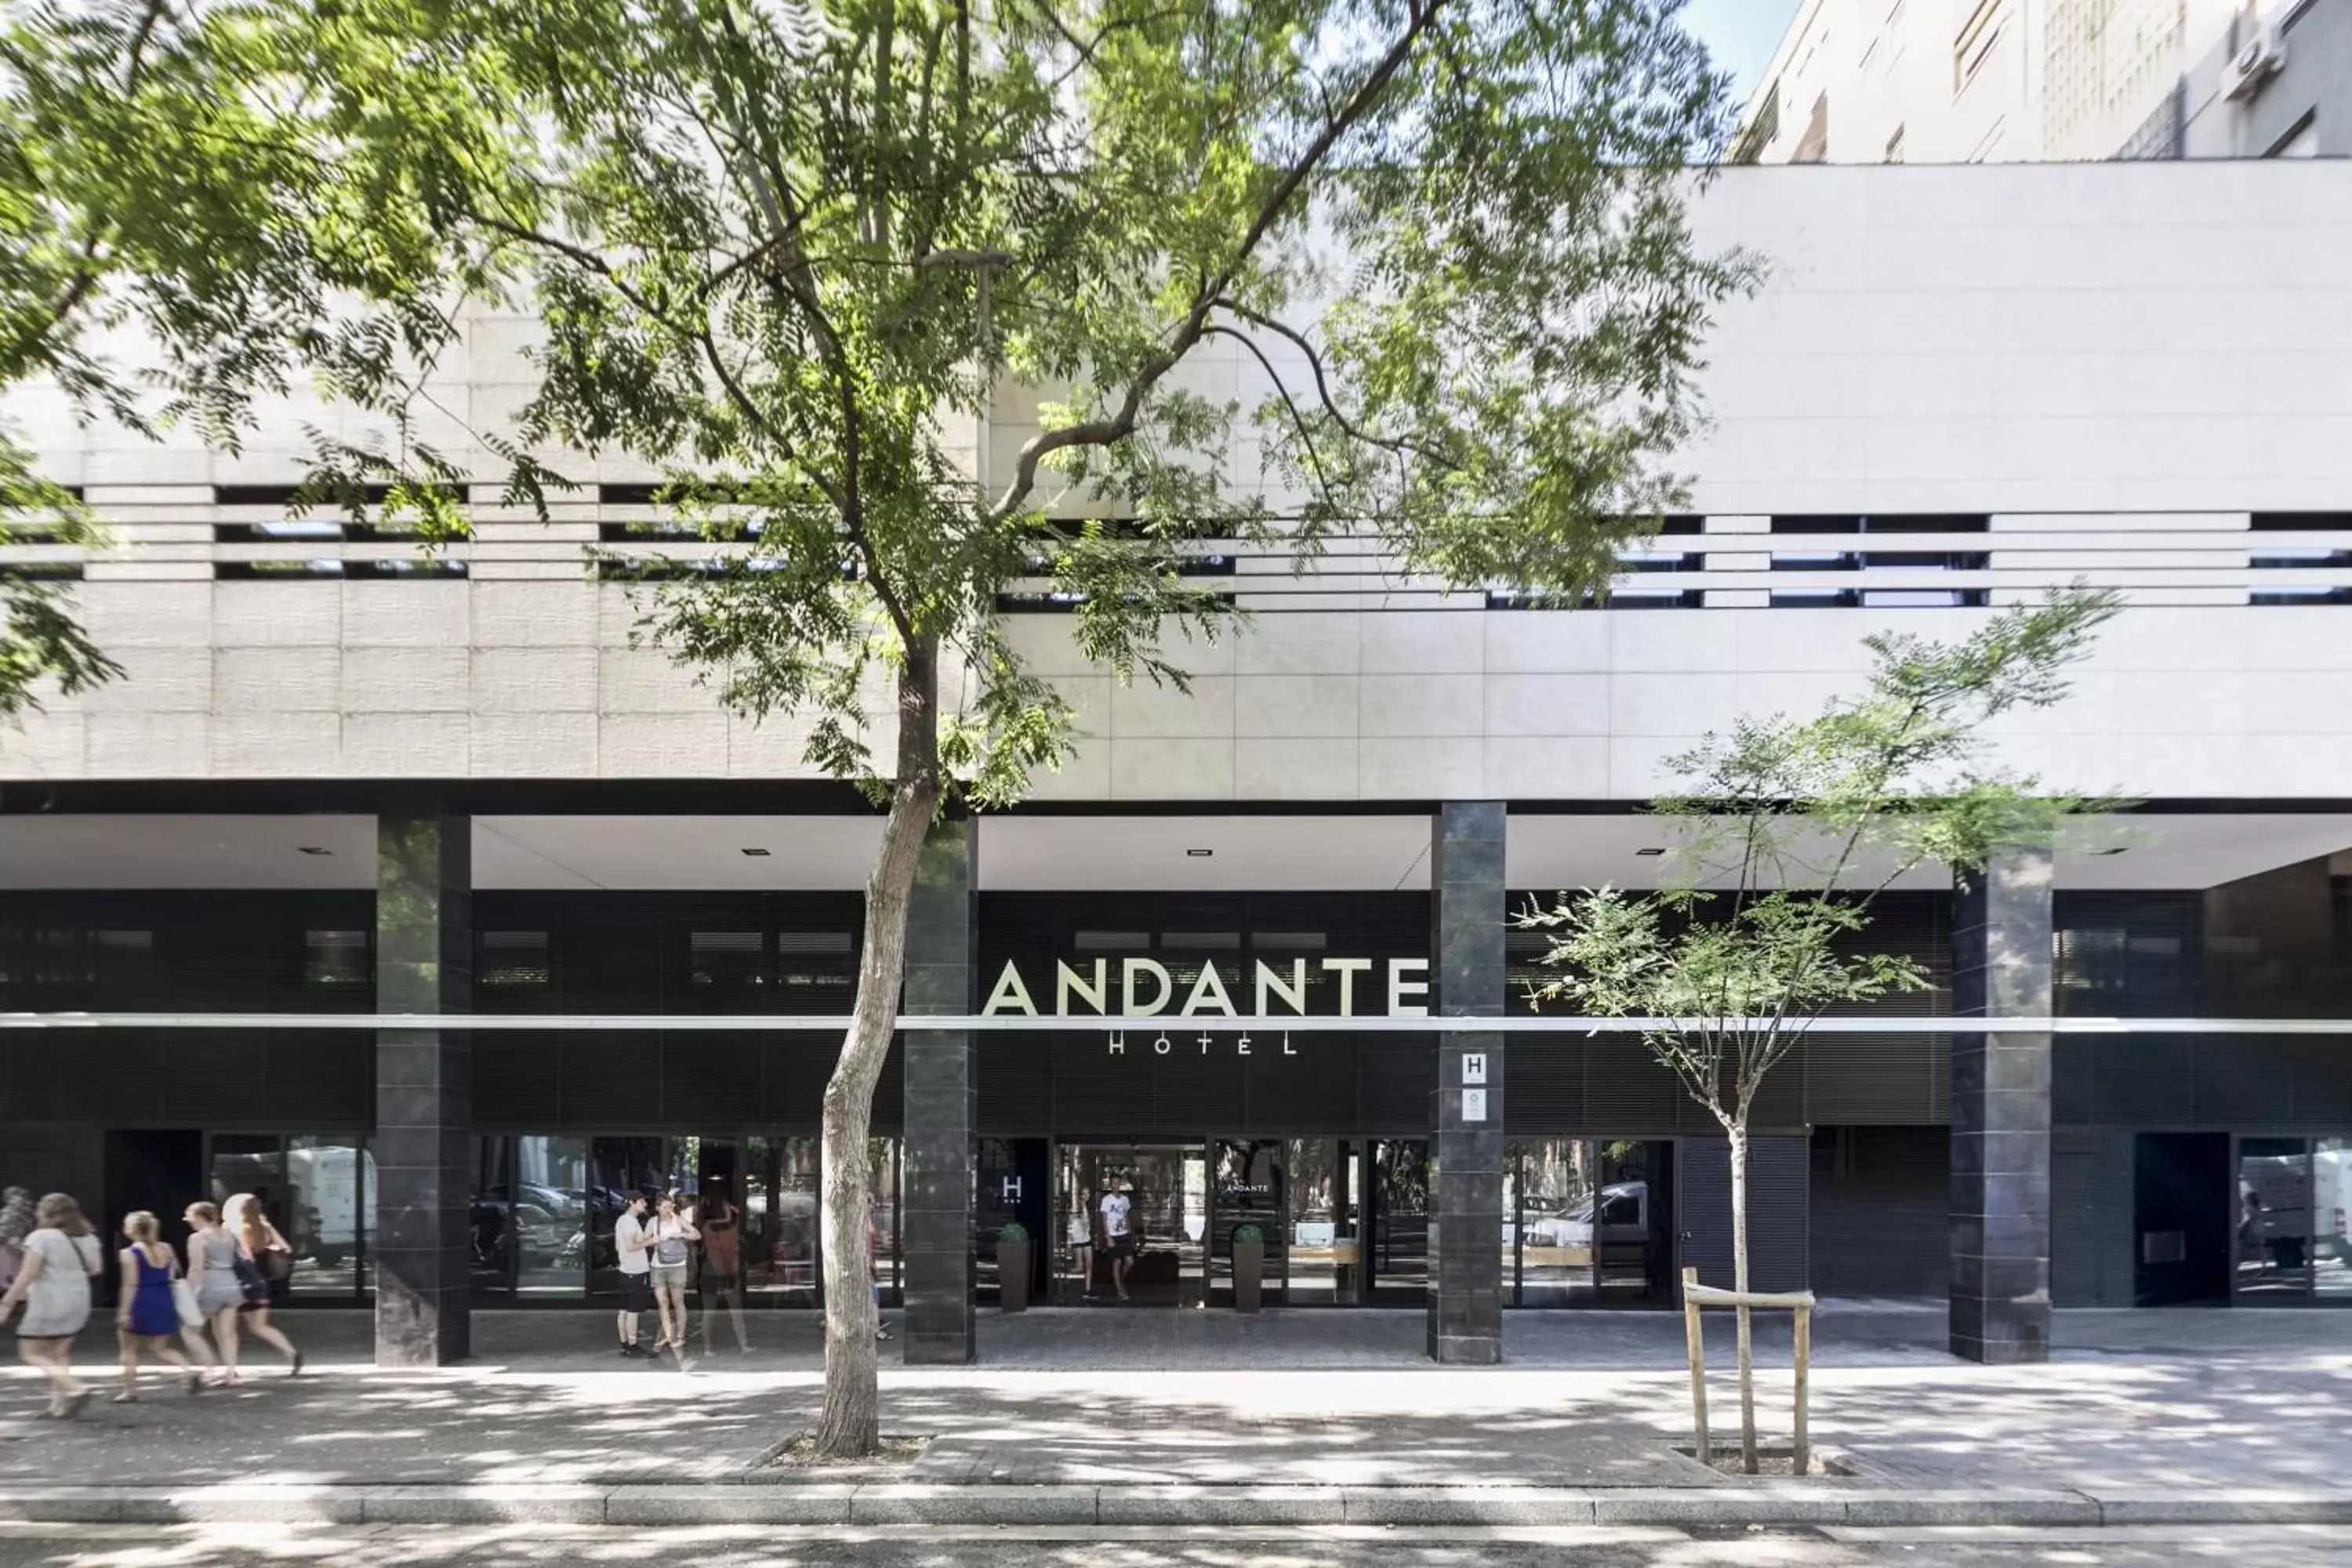 Facade/entrance, Property Building in Andante Hotel